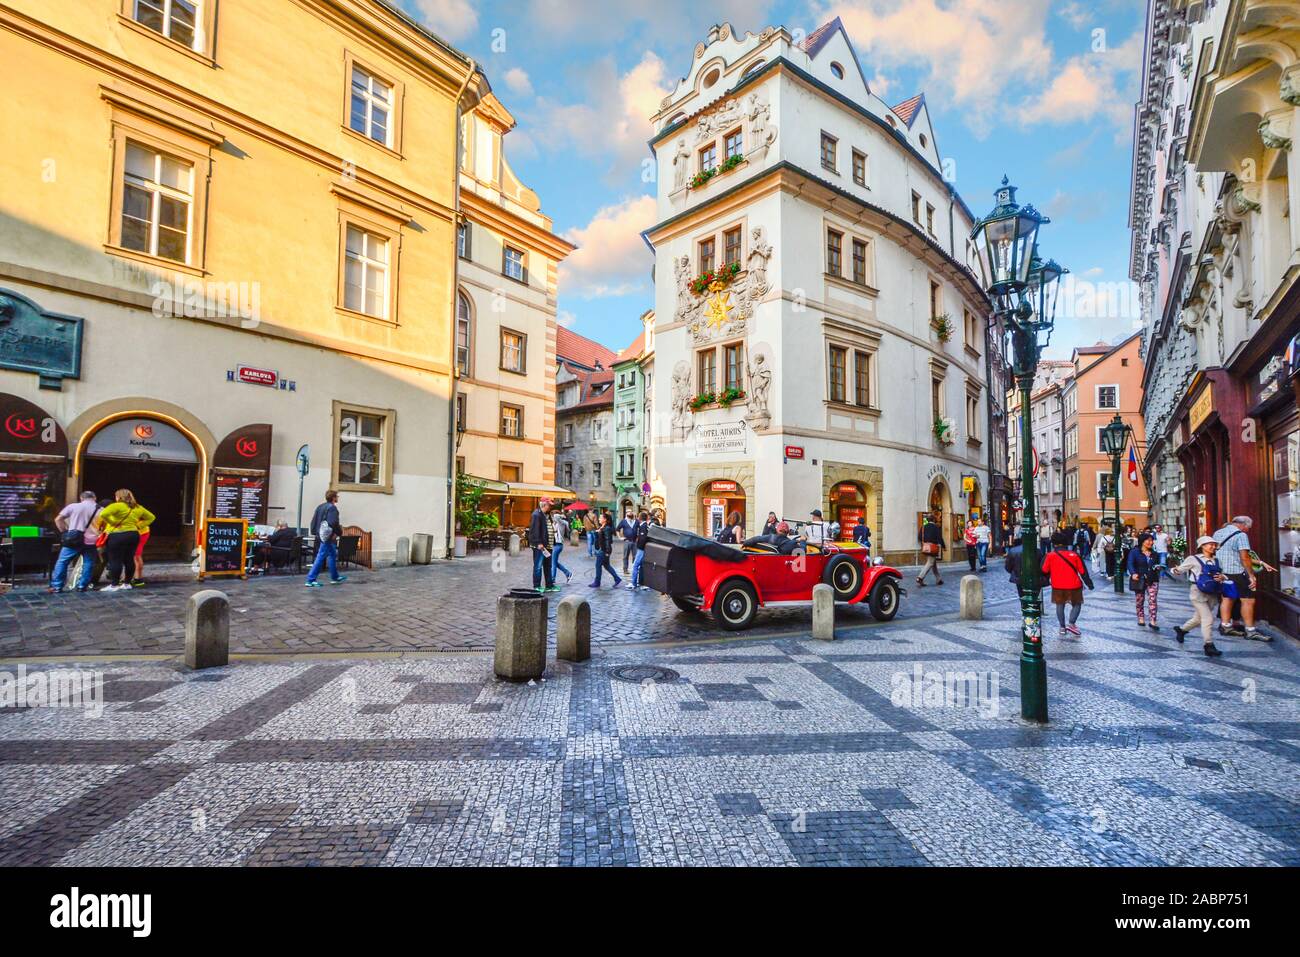 Touristen Sightseeing, Einkaufen und die Cafés genießen, wie Sie von einem alten roten Auto in einem malerischen Teil der Altstadt Prag, Tschechische Republik. Stockfoto